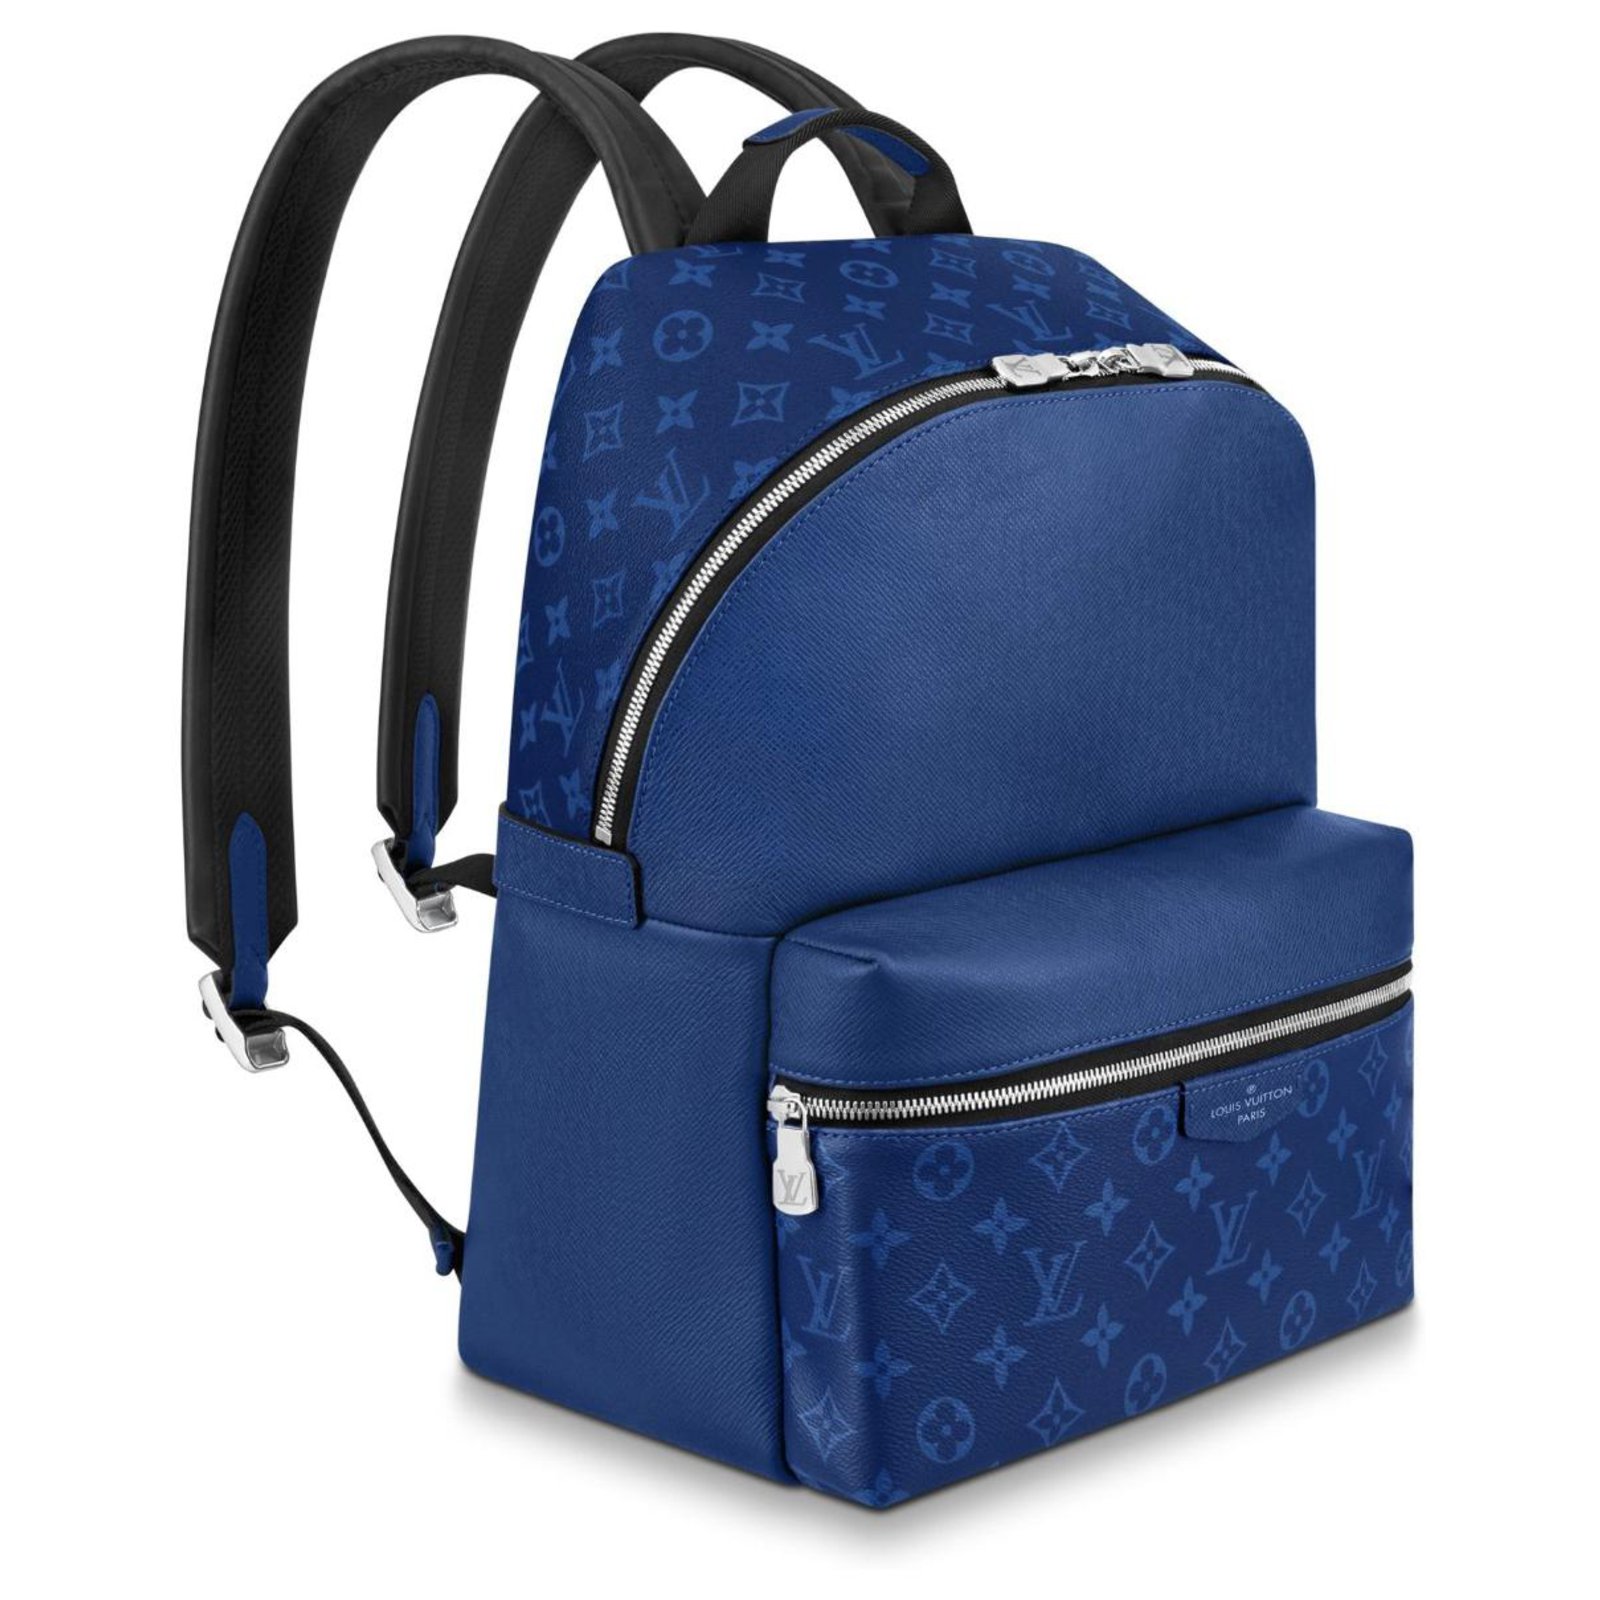 blue lv backpack